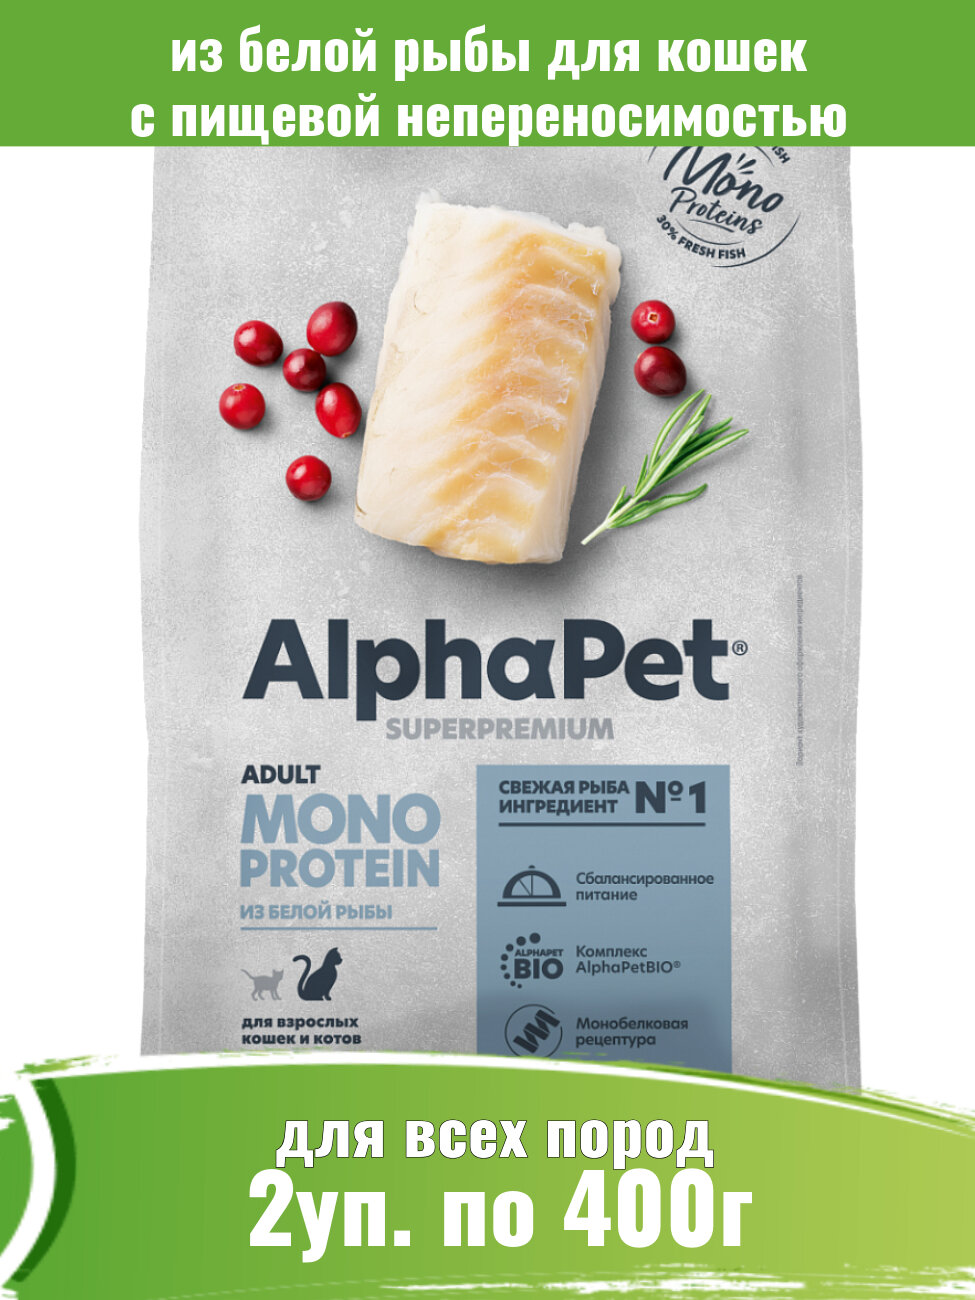 AlphaPet Monoprotein (АльфаПет) 2шт по 400г корм для кошек из белой рыбы